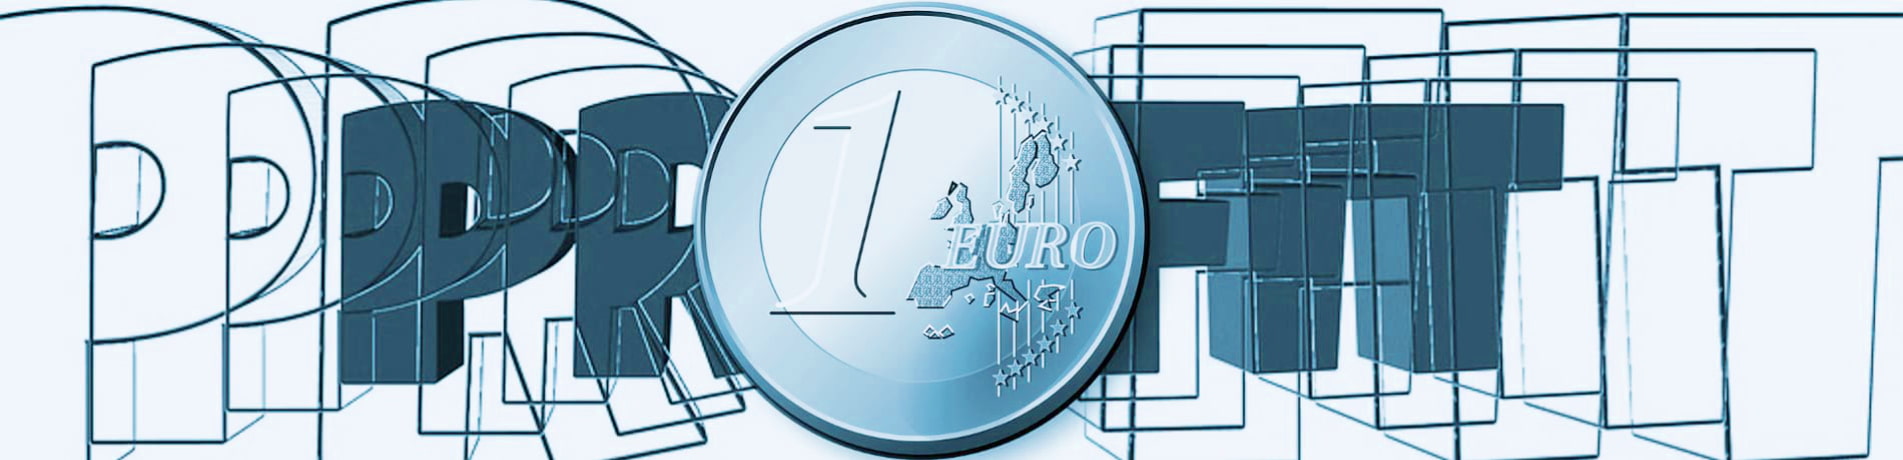 1 Euro Münze und Schriftzug Profit symbolisieren Gewinn durch vernünftige Preise und realistische Kostenrechnung für Webdesign, Marketing und SEO mit netzSEO